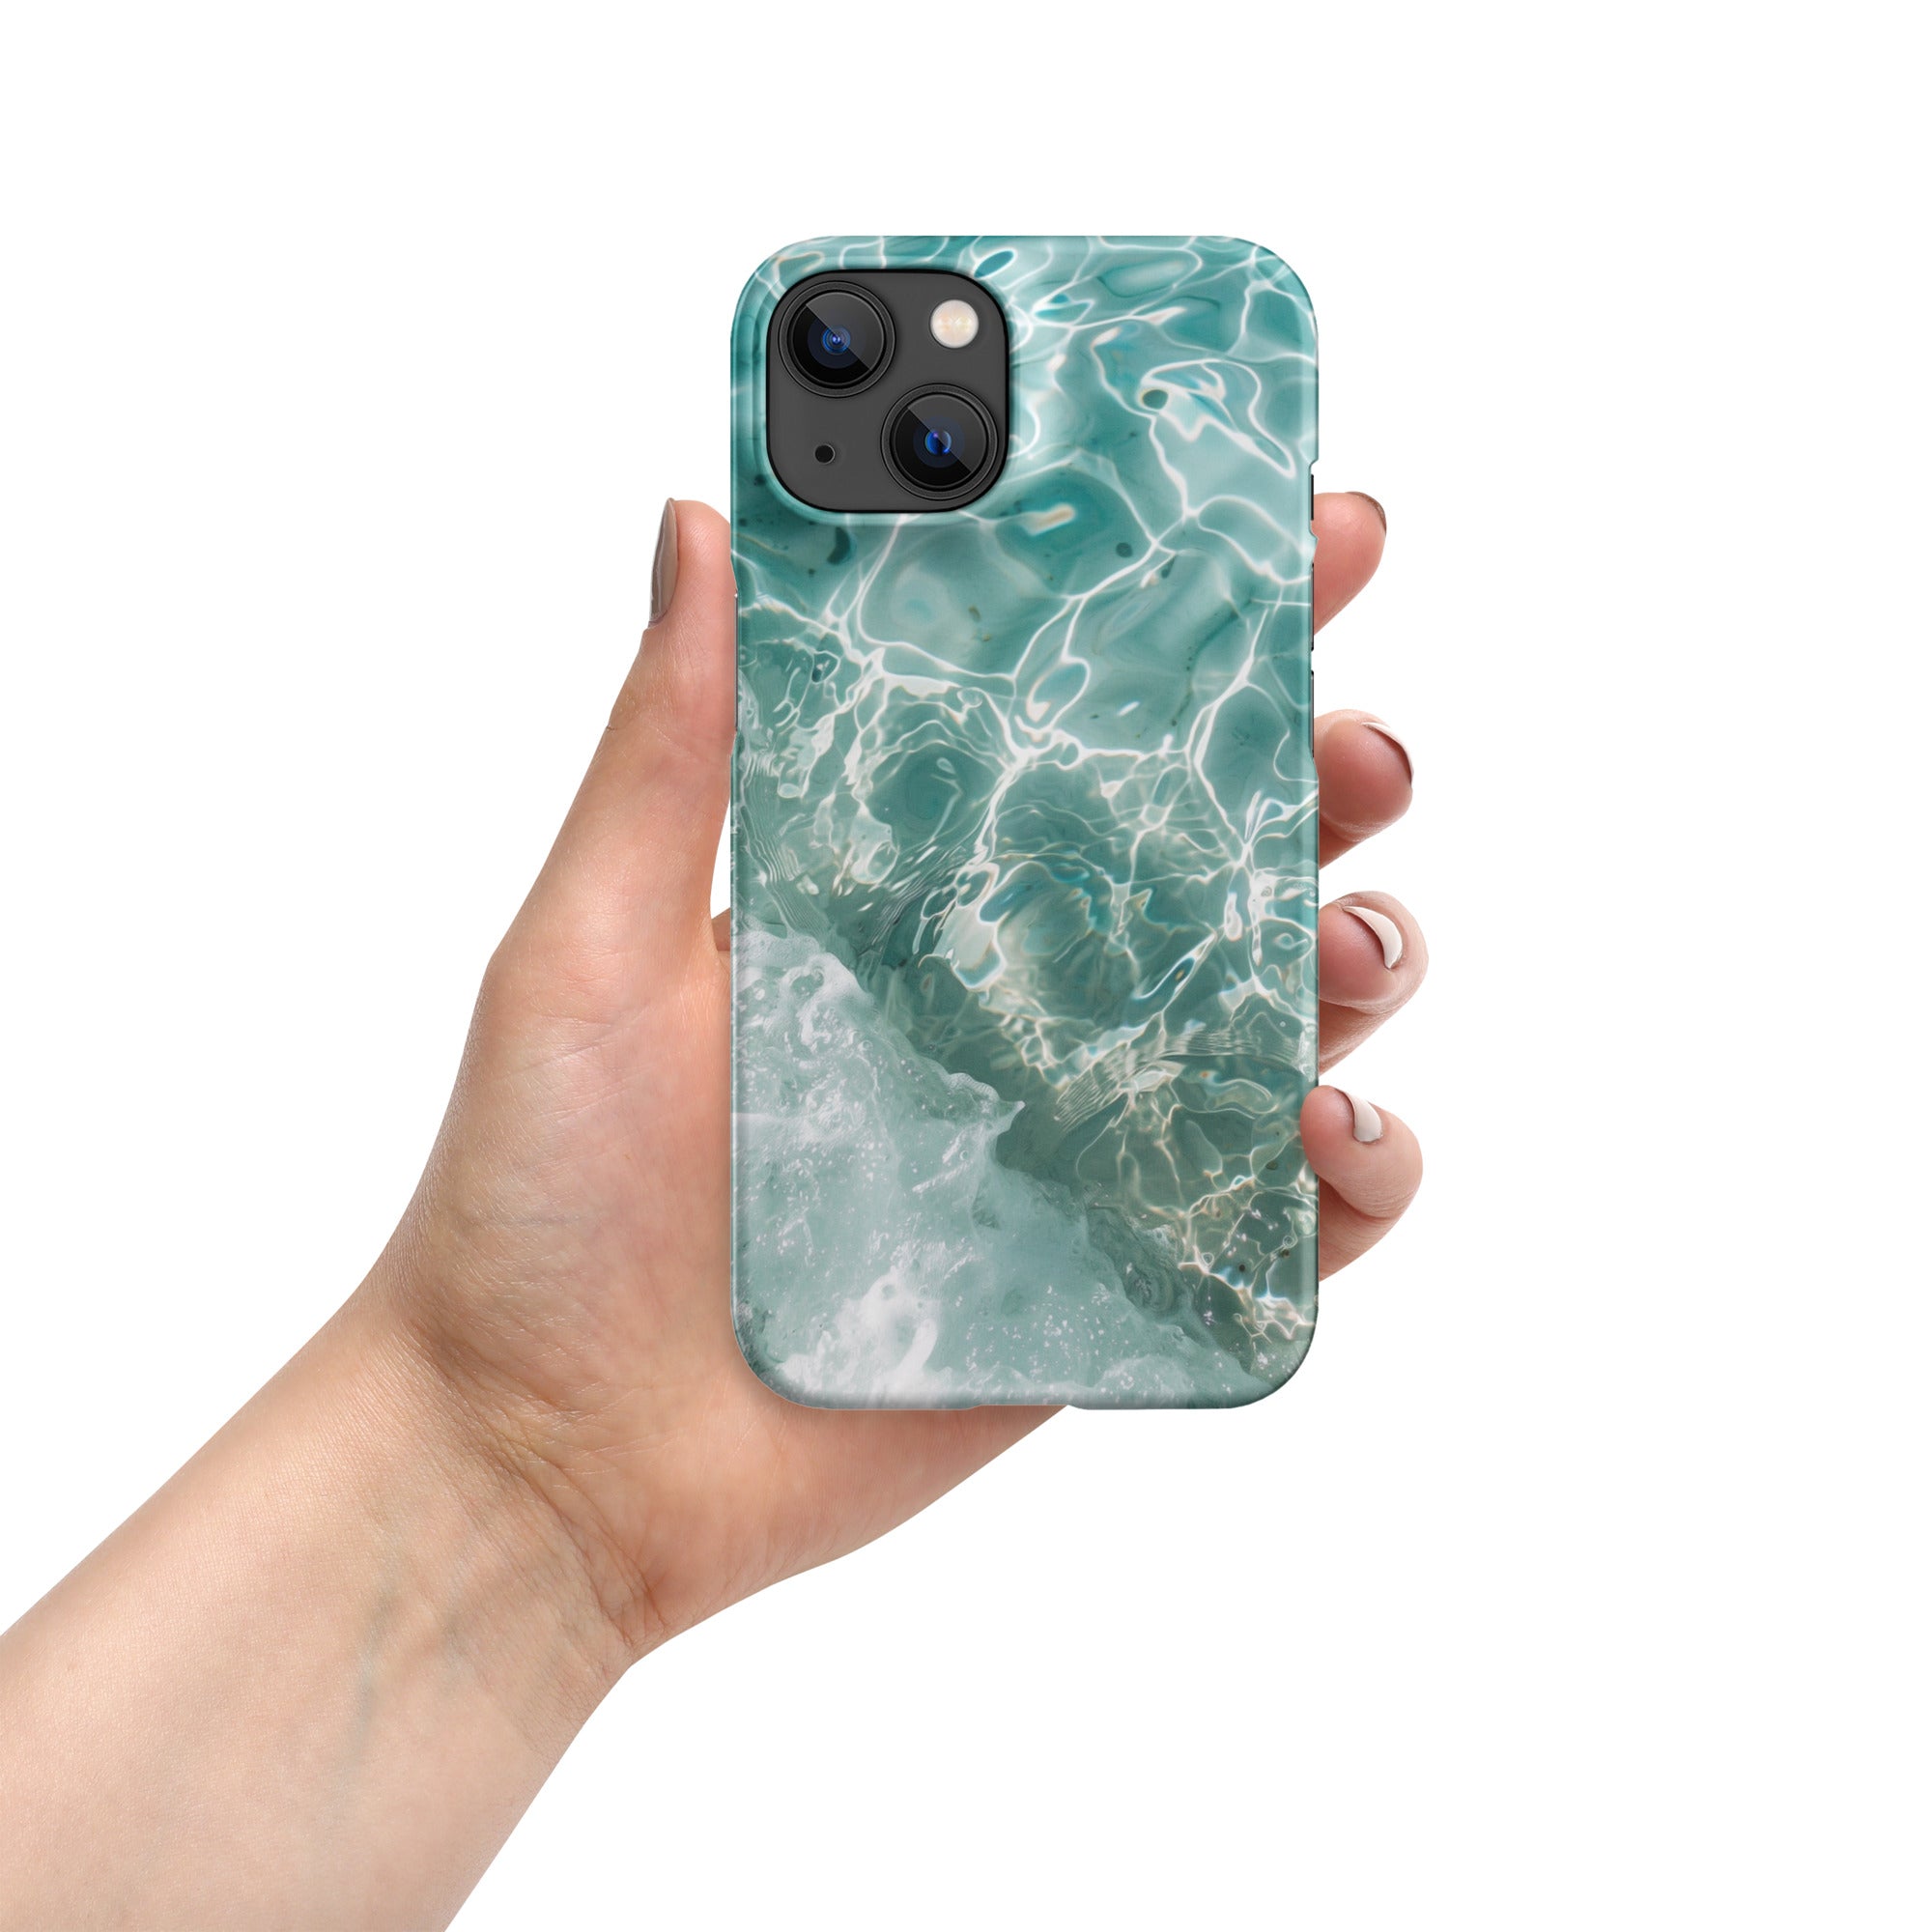 Aqua® iPhone® snap case